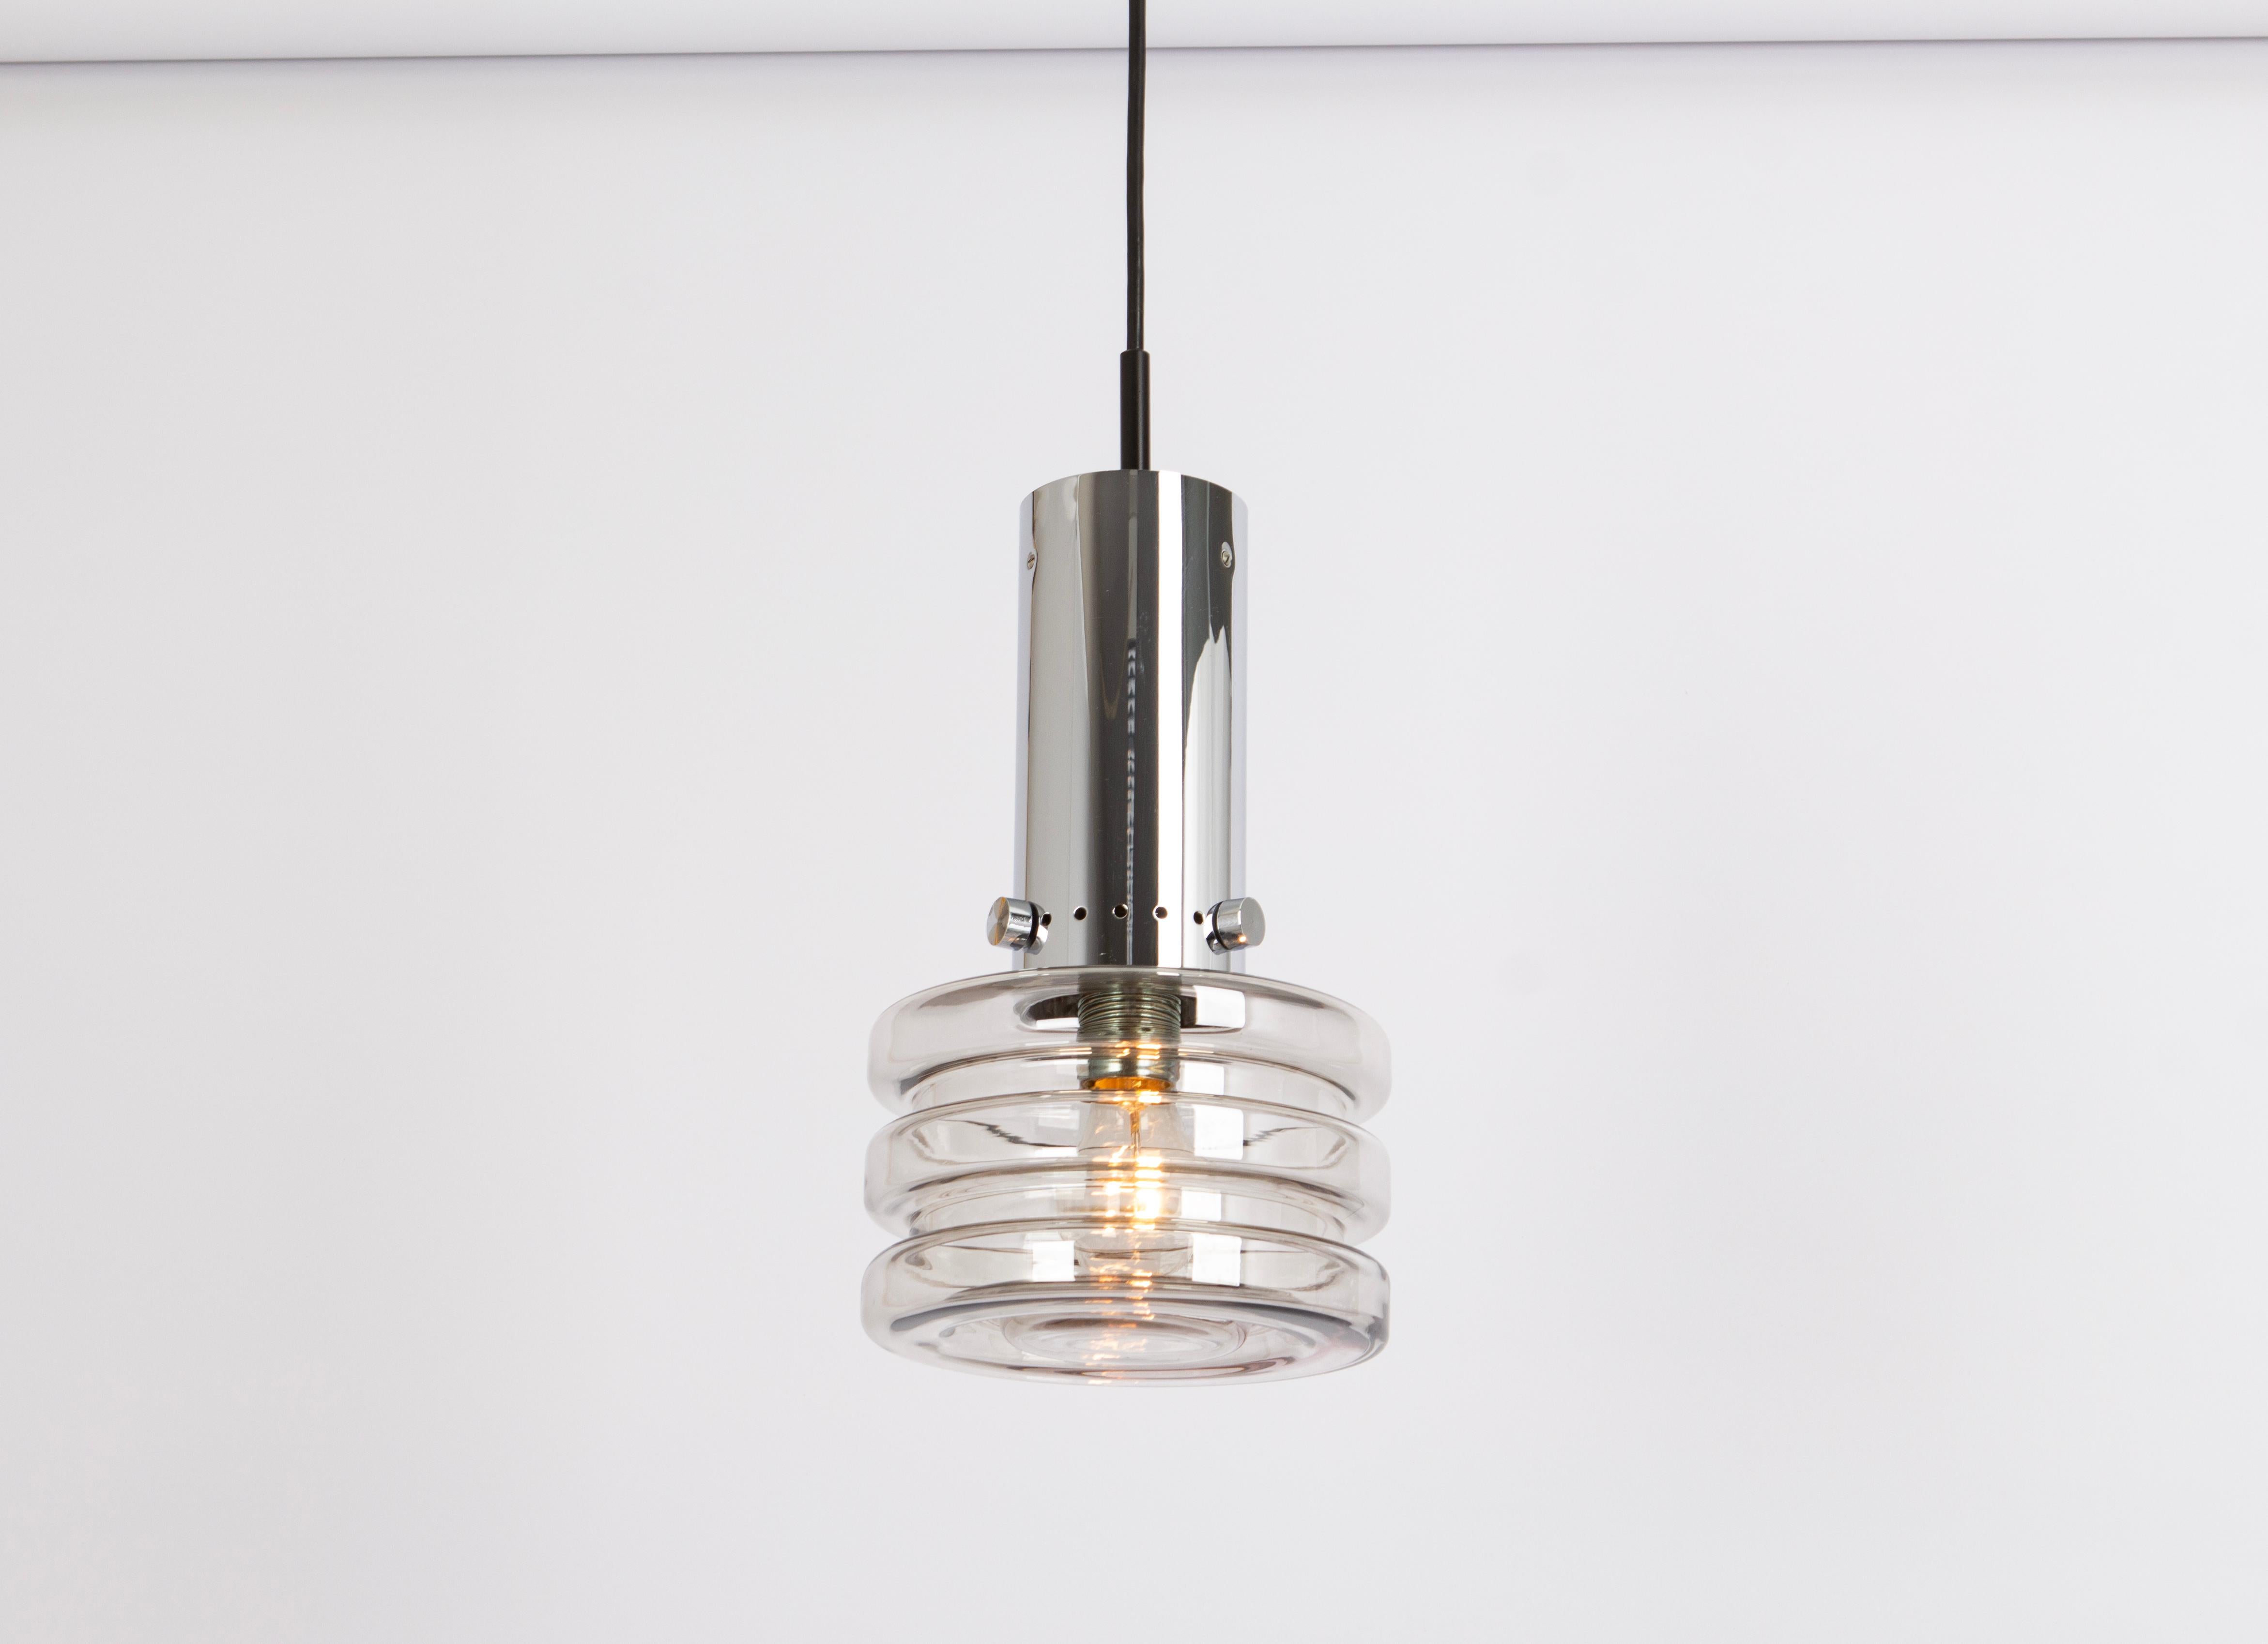 1 de 4 petites lampes suspendues en verre de Limburg, fabriquées en Allemagne, vers les années 1970

Douilles : Il faut 1 ampoule standard E27.
Les ampoules ne sont pas incluses. Il est possible d'installer ce luminaire dans tous les pays